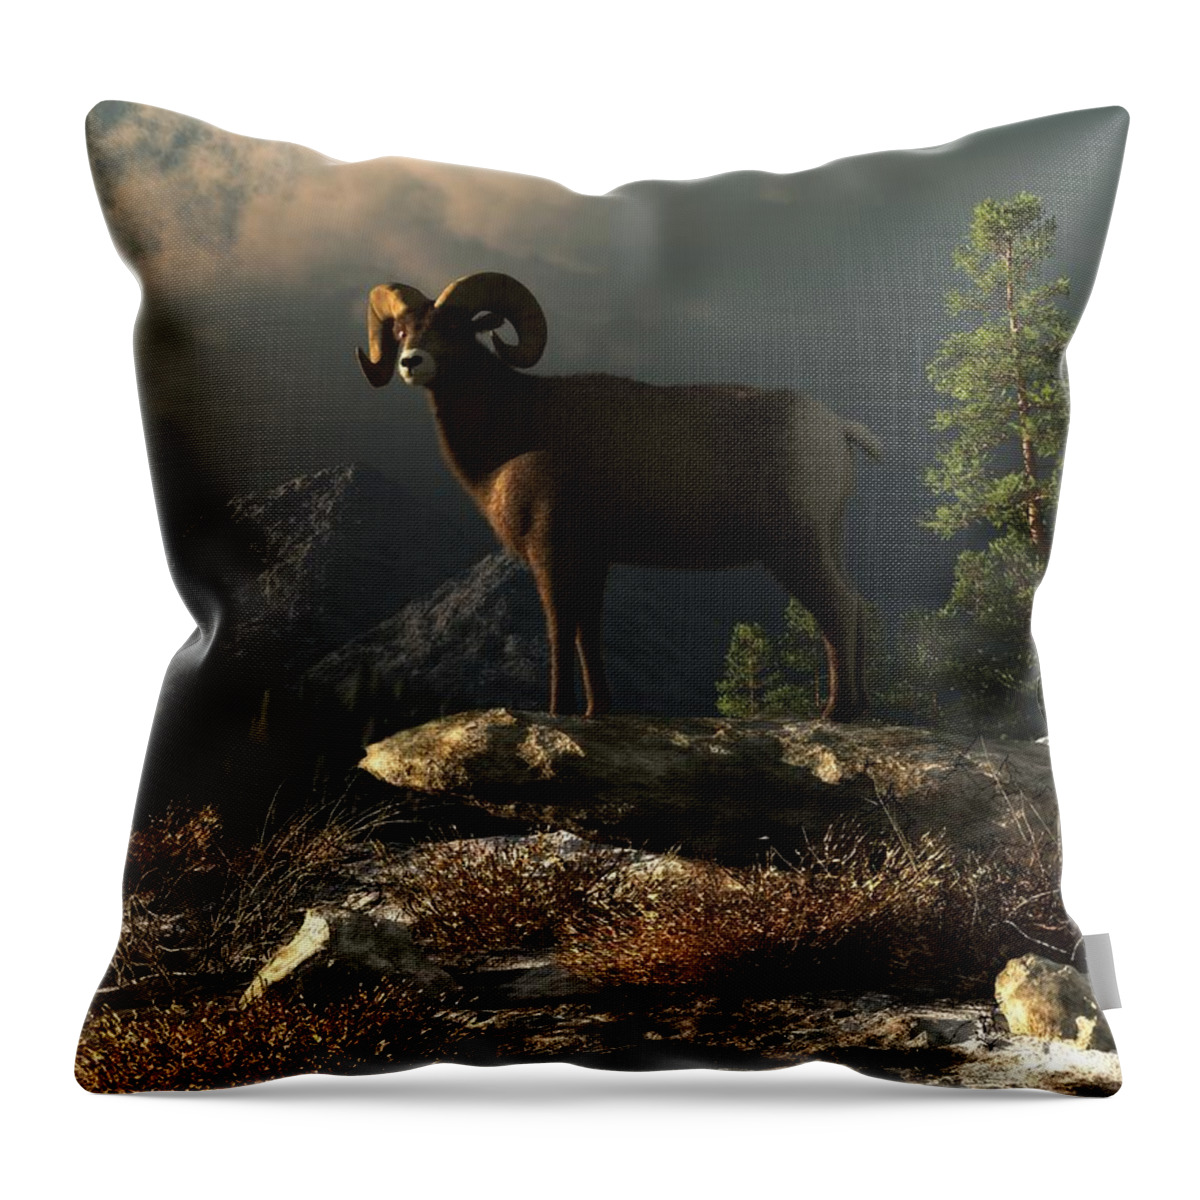 Ram Throw Pillow featuring the digital art Wild Ram by Daniel Eskridge